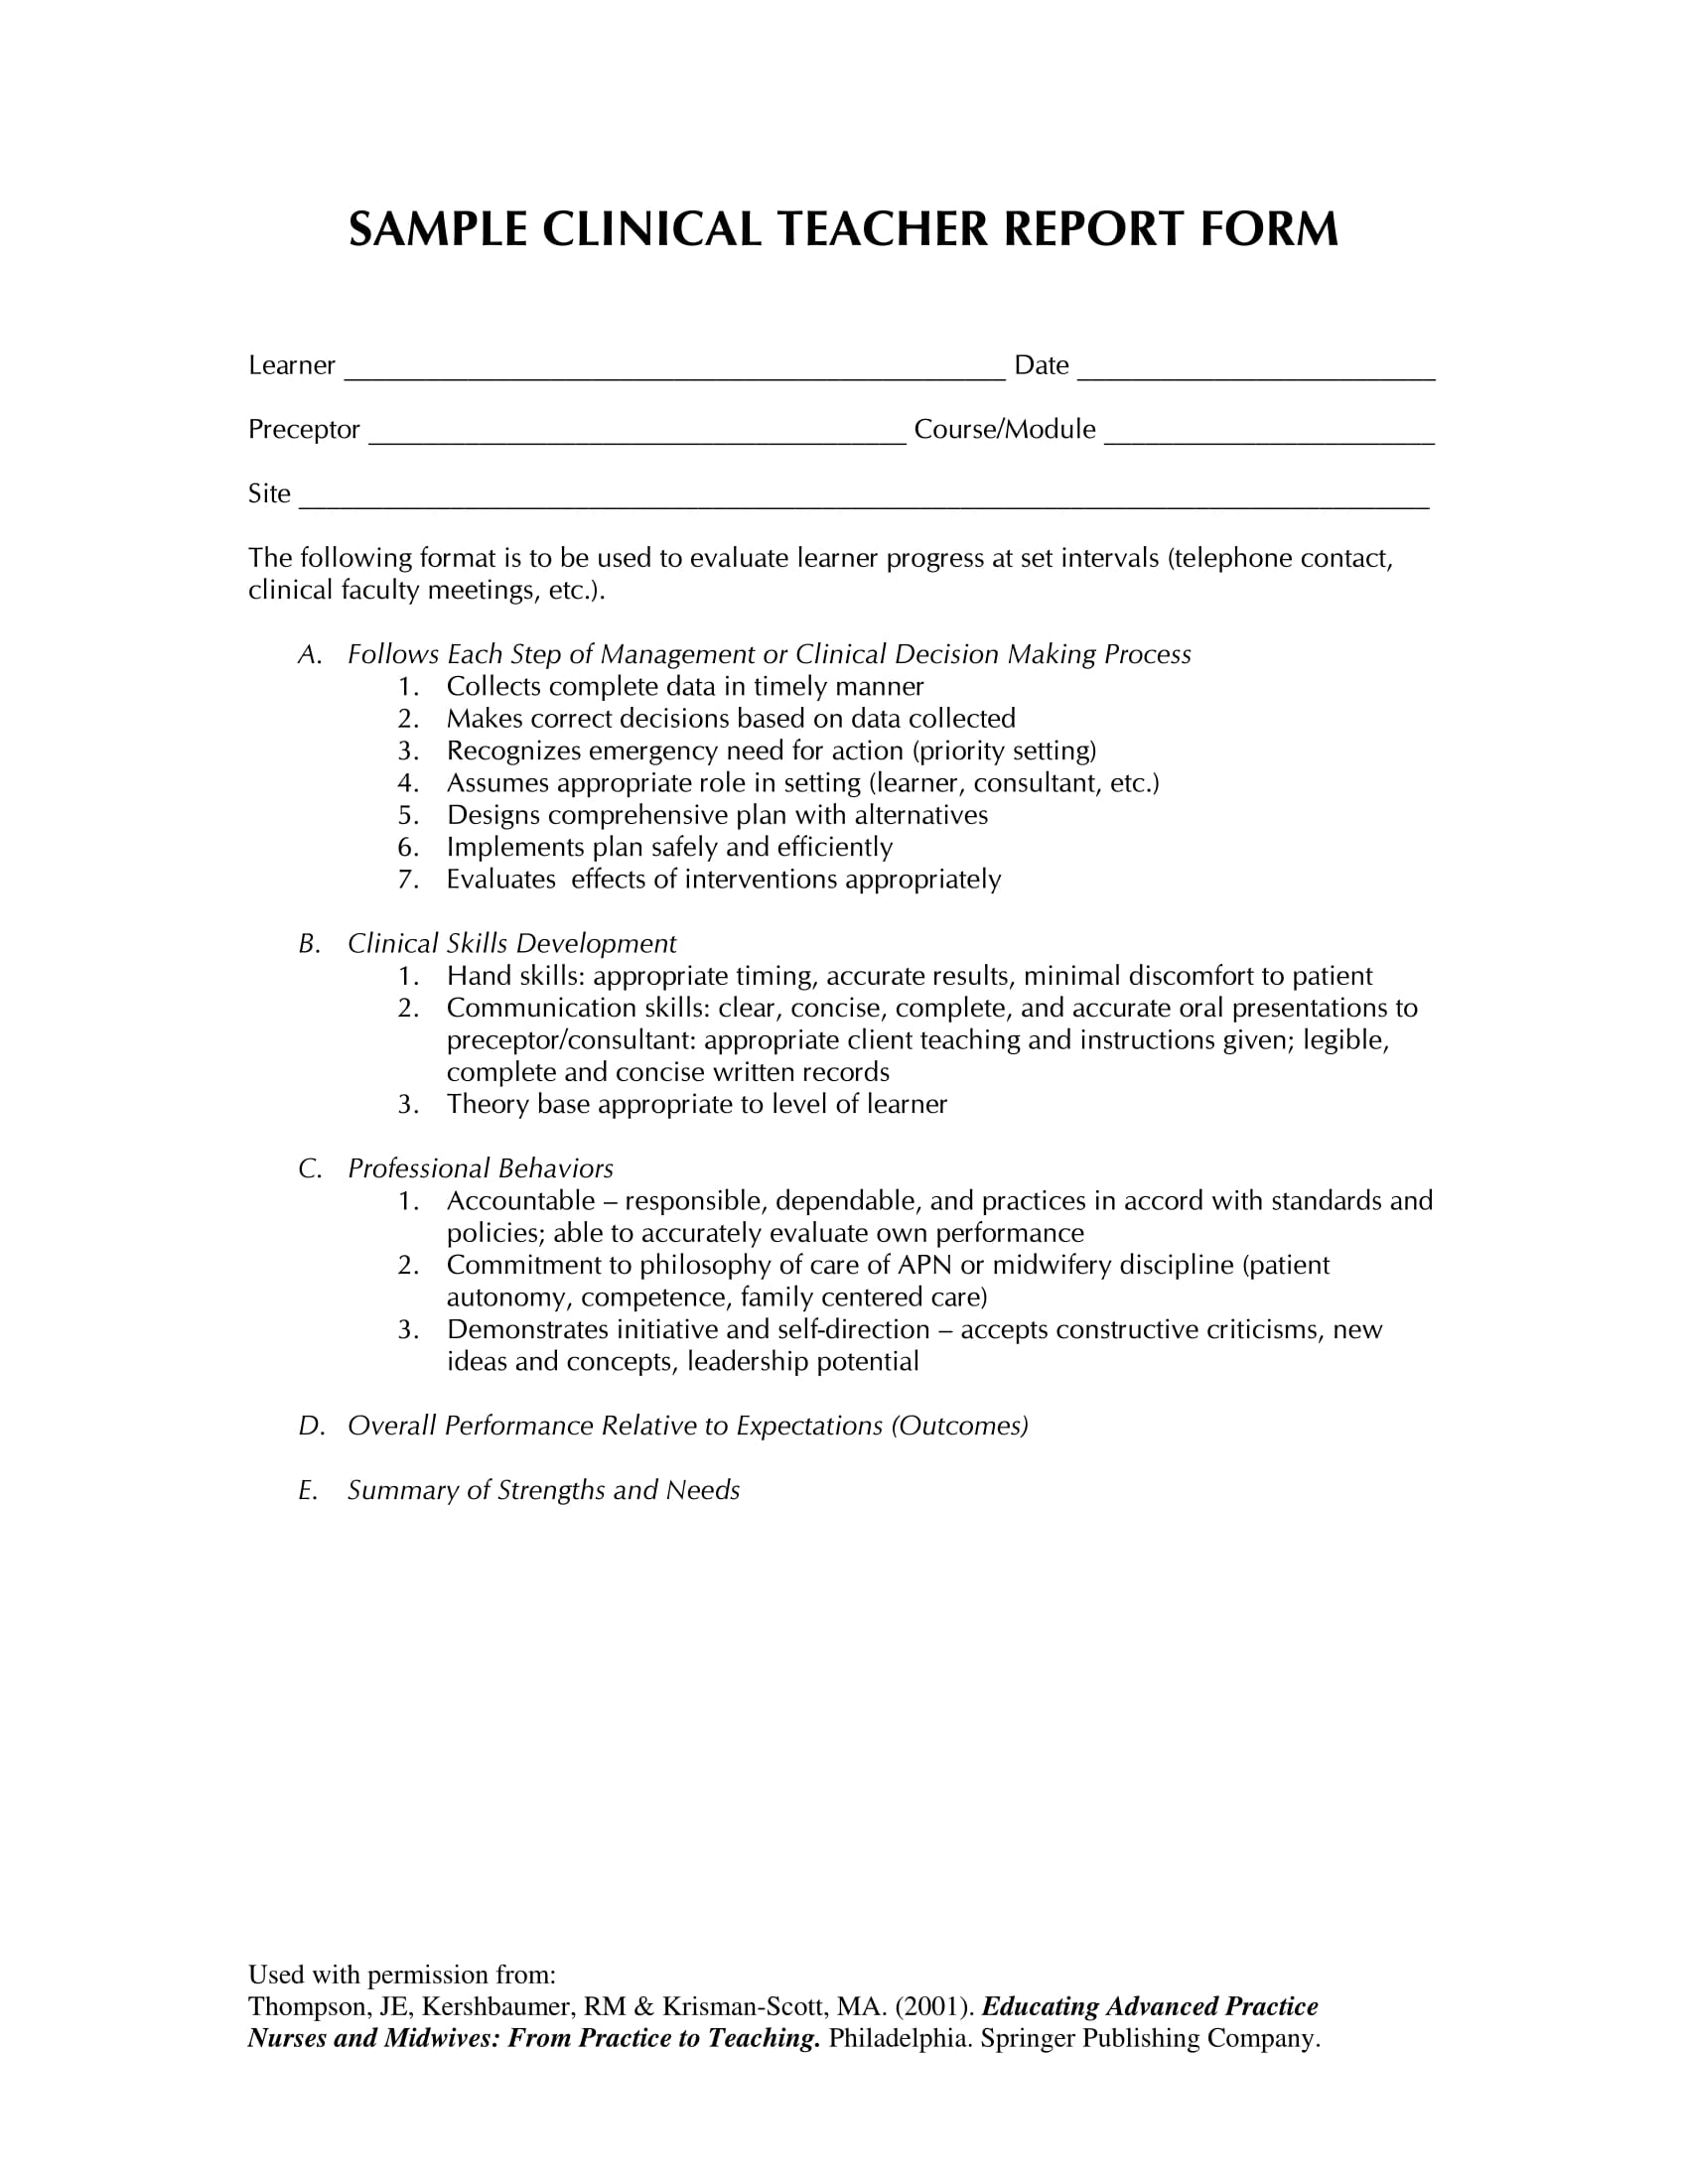 clinical teacher report form 1